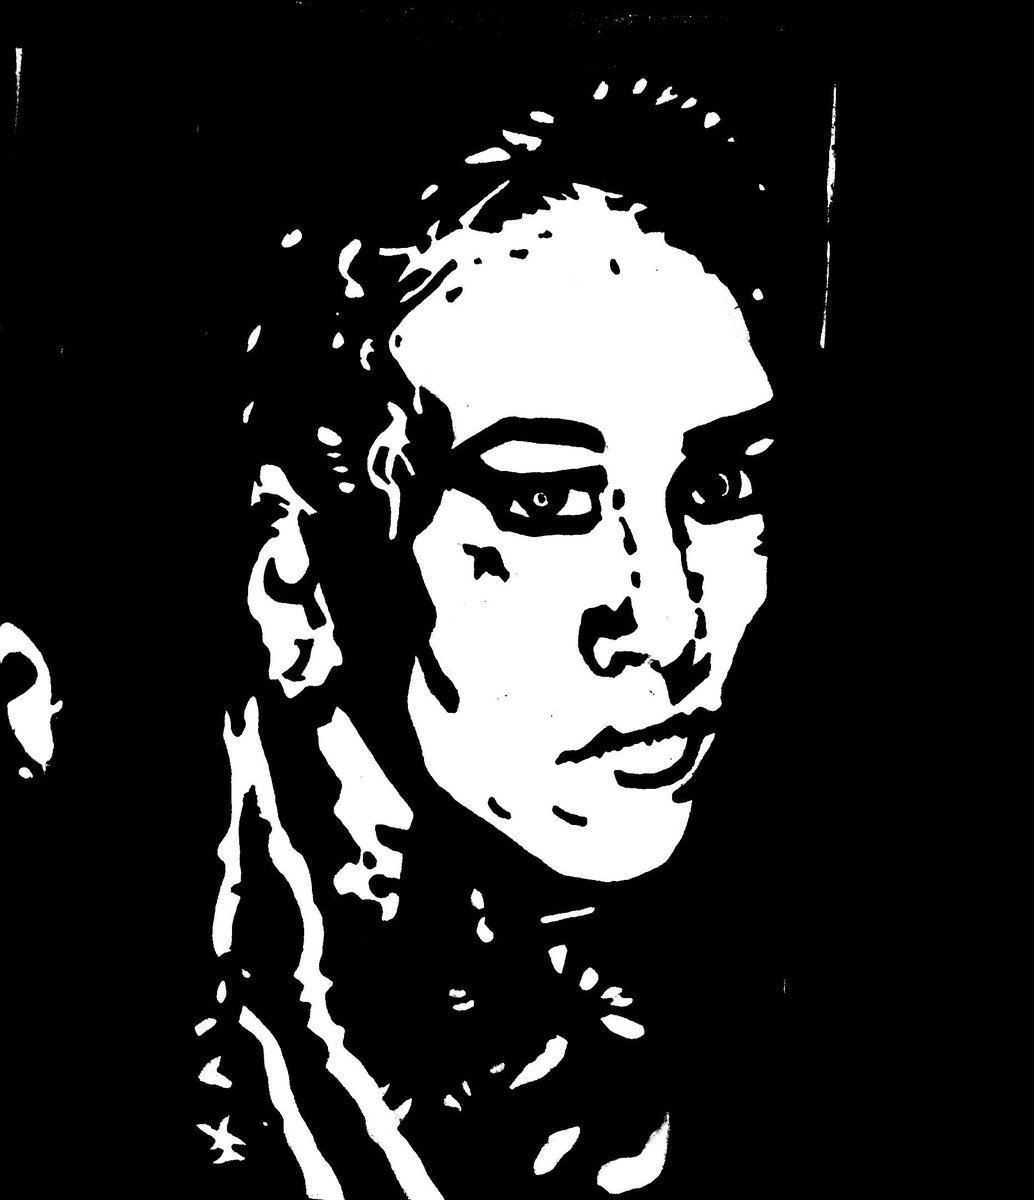 Quick lunch break sketch of Lindsay Snow.
.
.
.
.
.
#lindsaysnow #wrestler #tattooist #prowrestling #wrestling #wrestlingart #fanart #art #artwork #artist #illustrator #illustration #portrait #draw #drawing #sketch #sketching #sketchbook